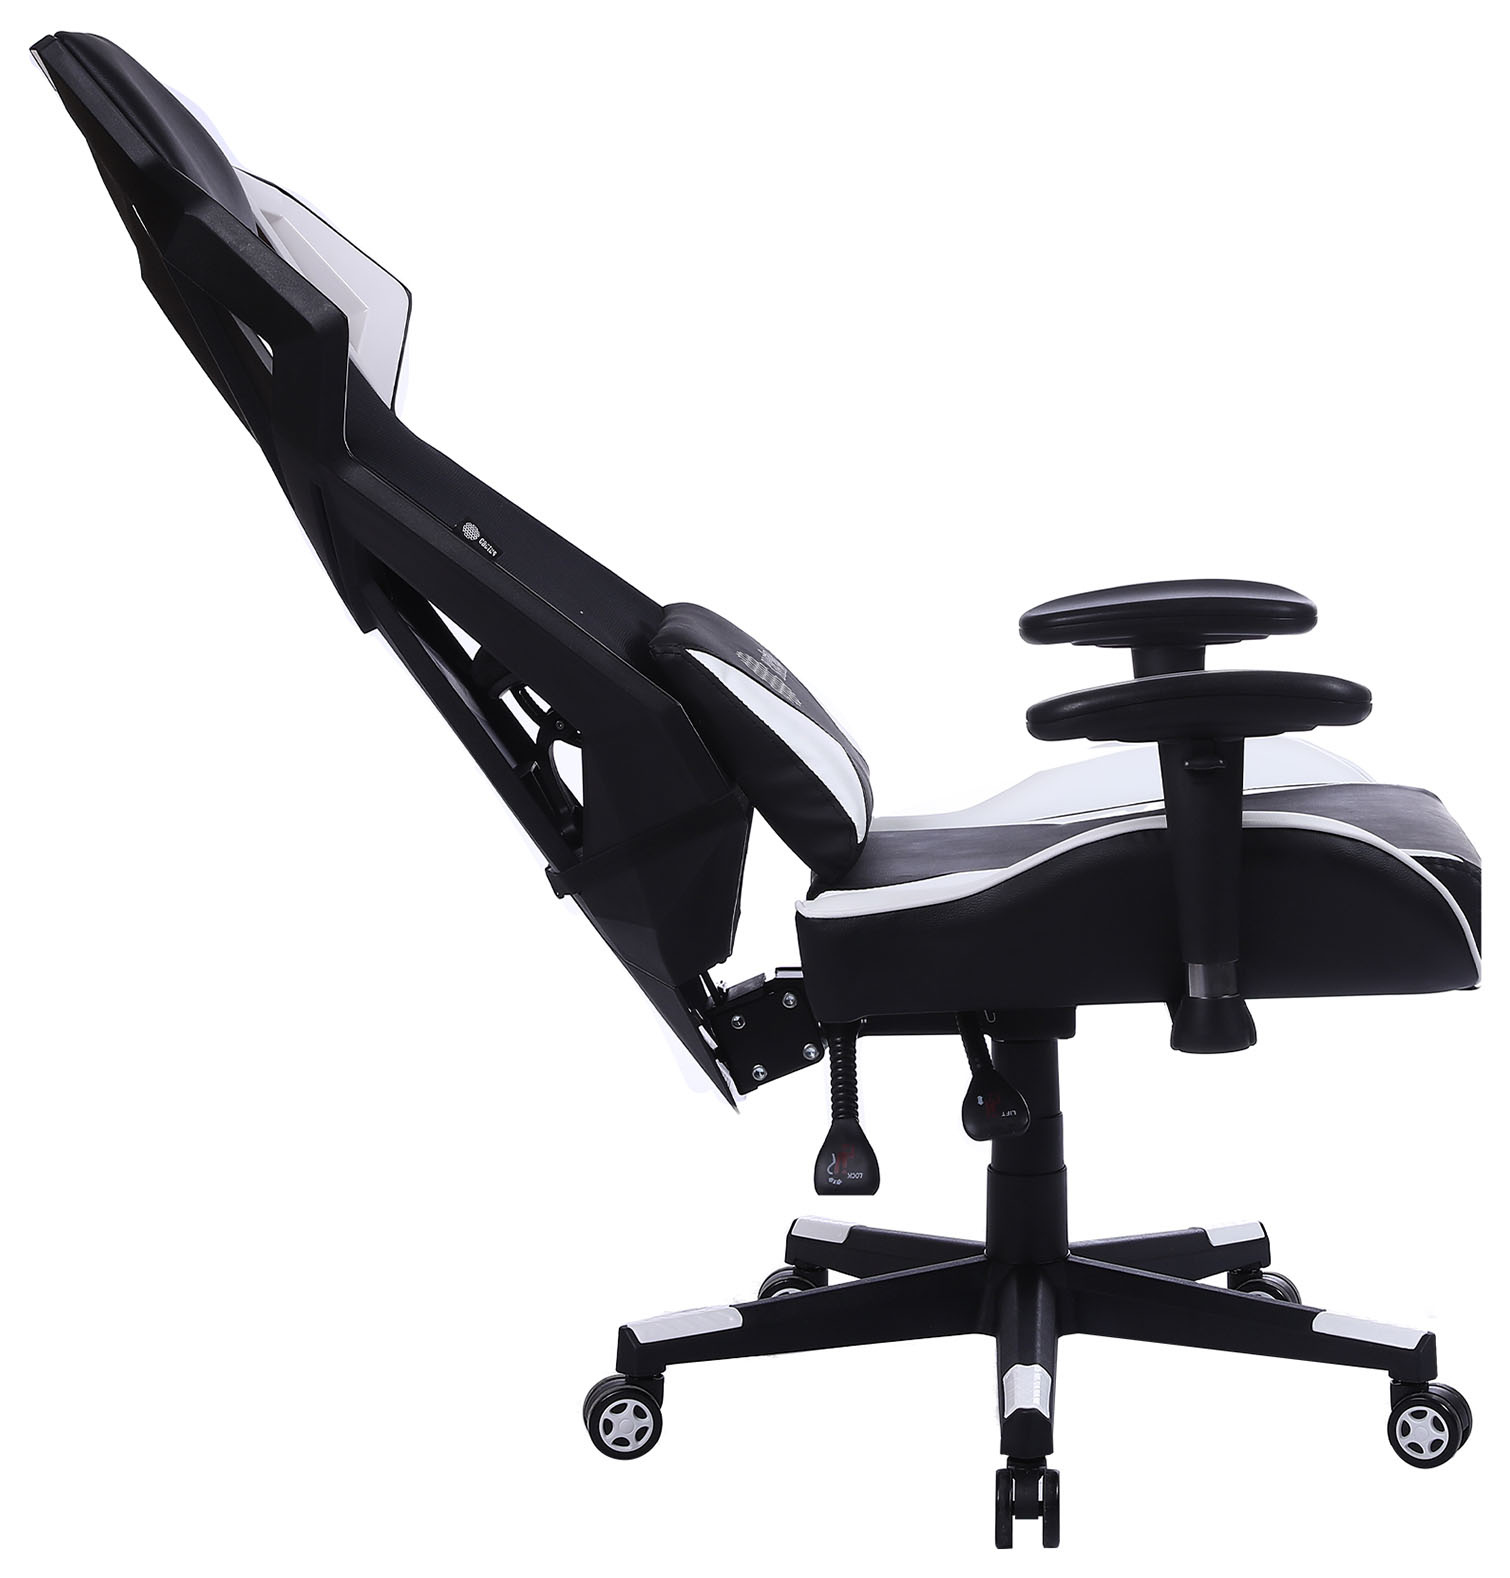 Кресло игровое Cactus CS-CHR-090BLW черный/белый сиденье черный/белый эко.кожа крестовина пластик пластик черный/белый 